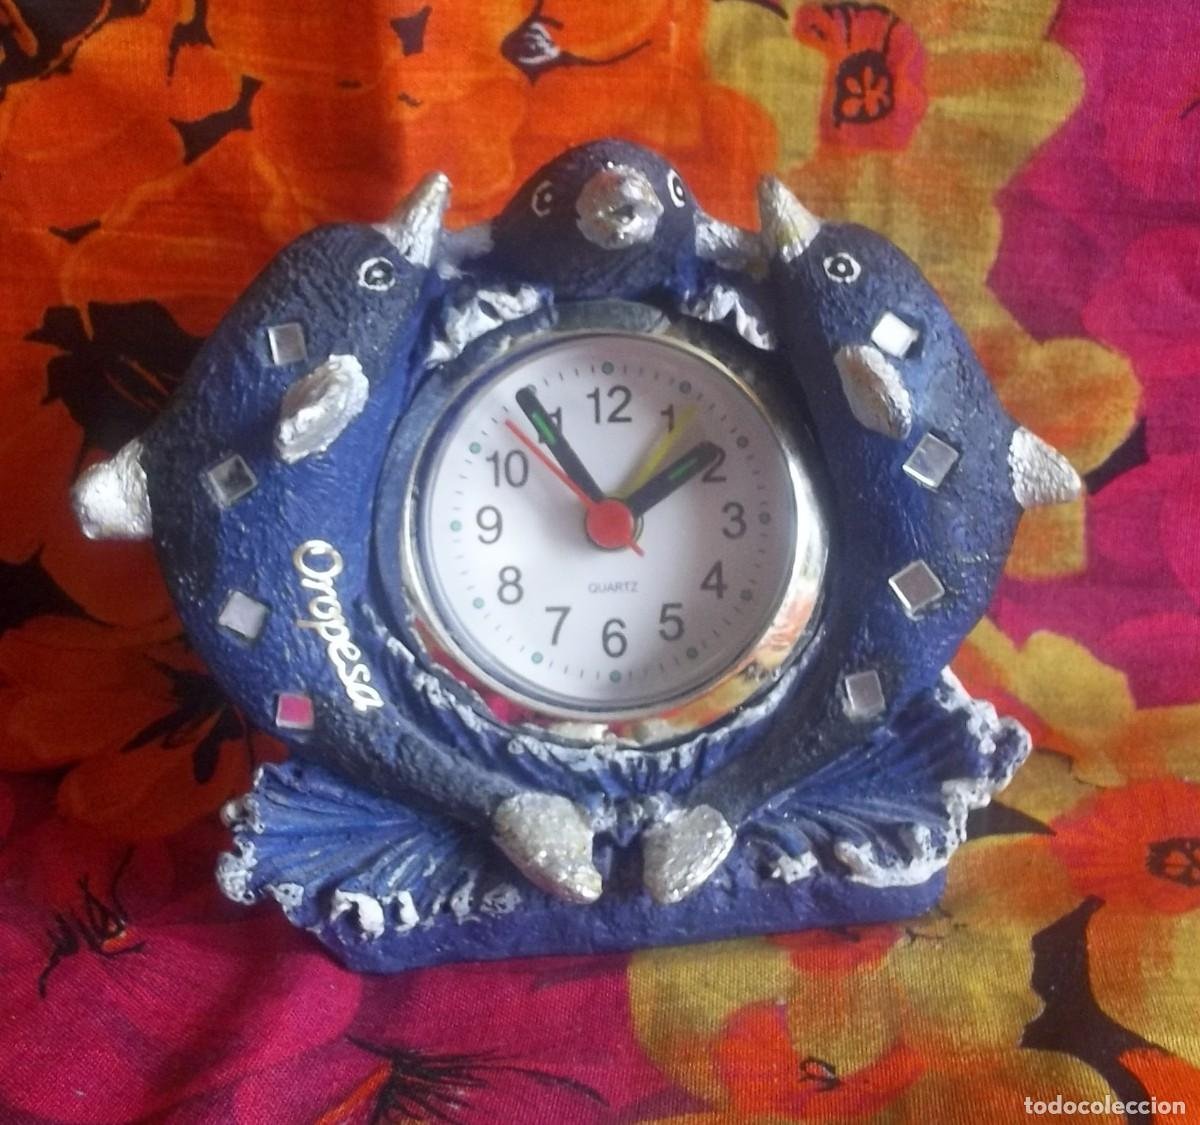 reloj infantil de resina - Compra venta en todocoleccion